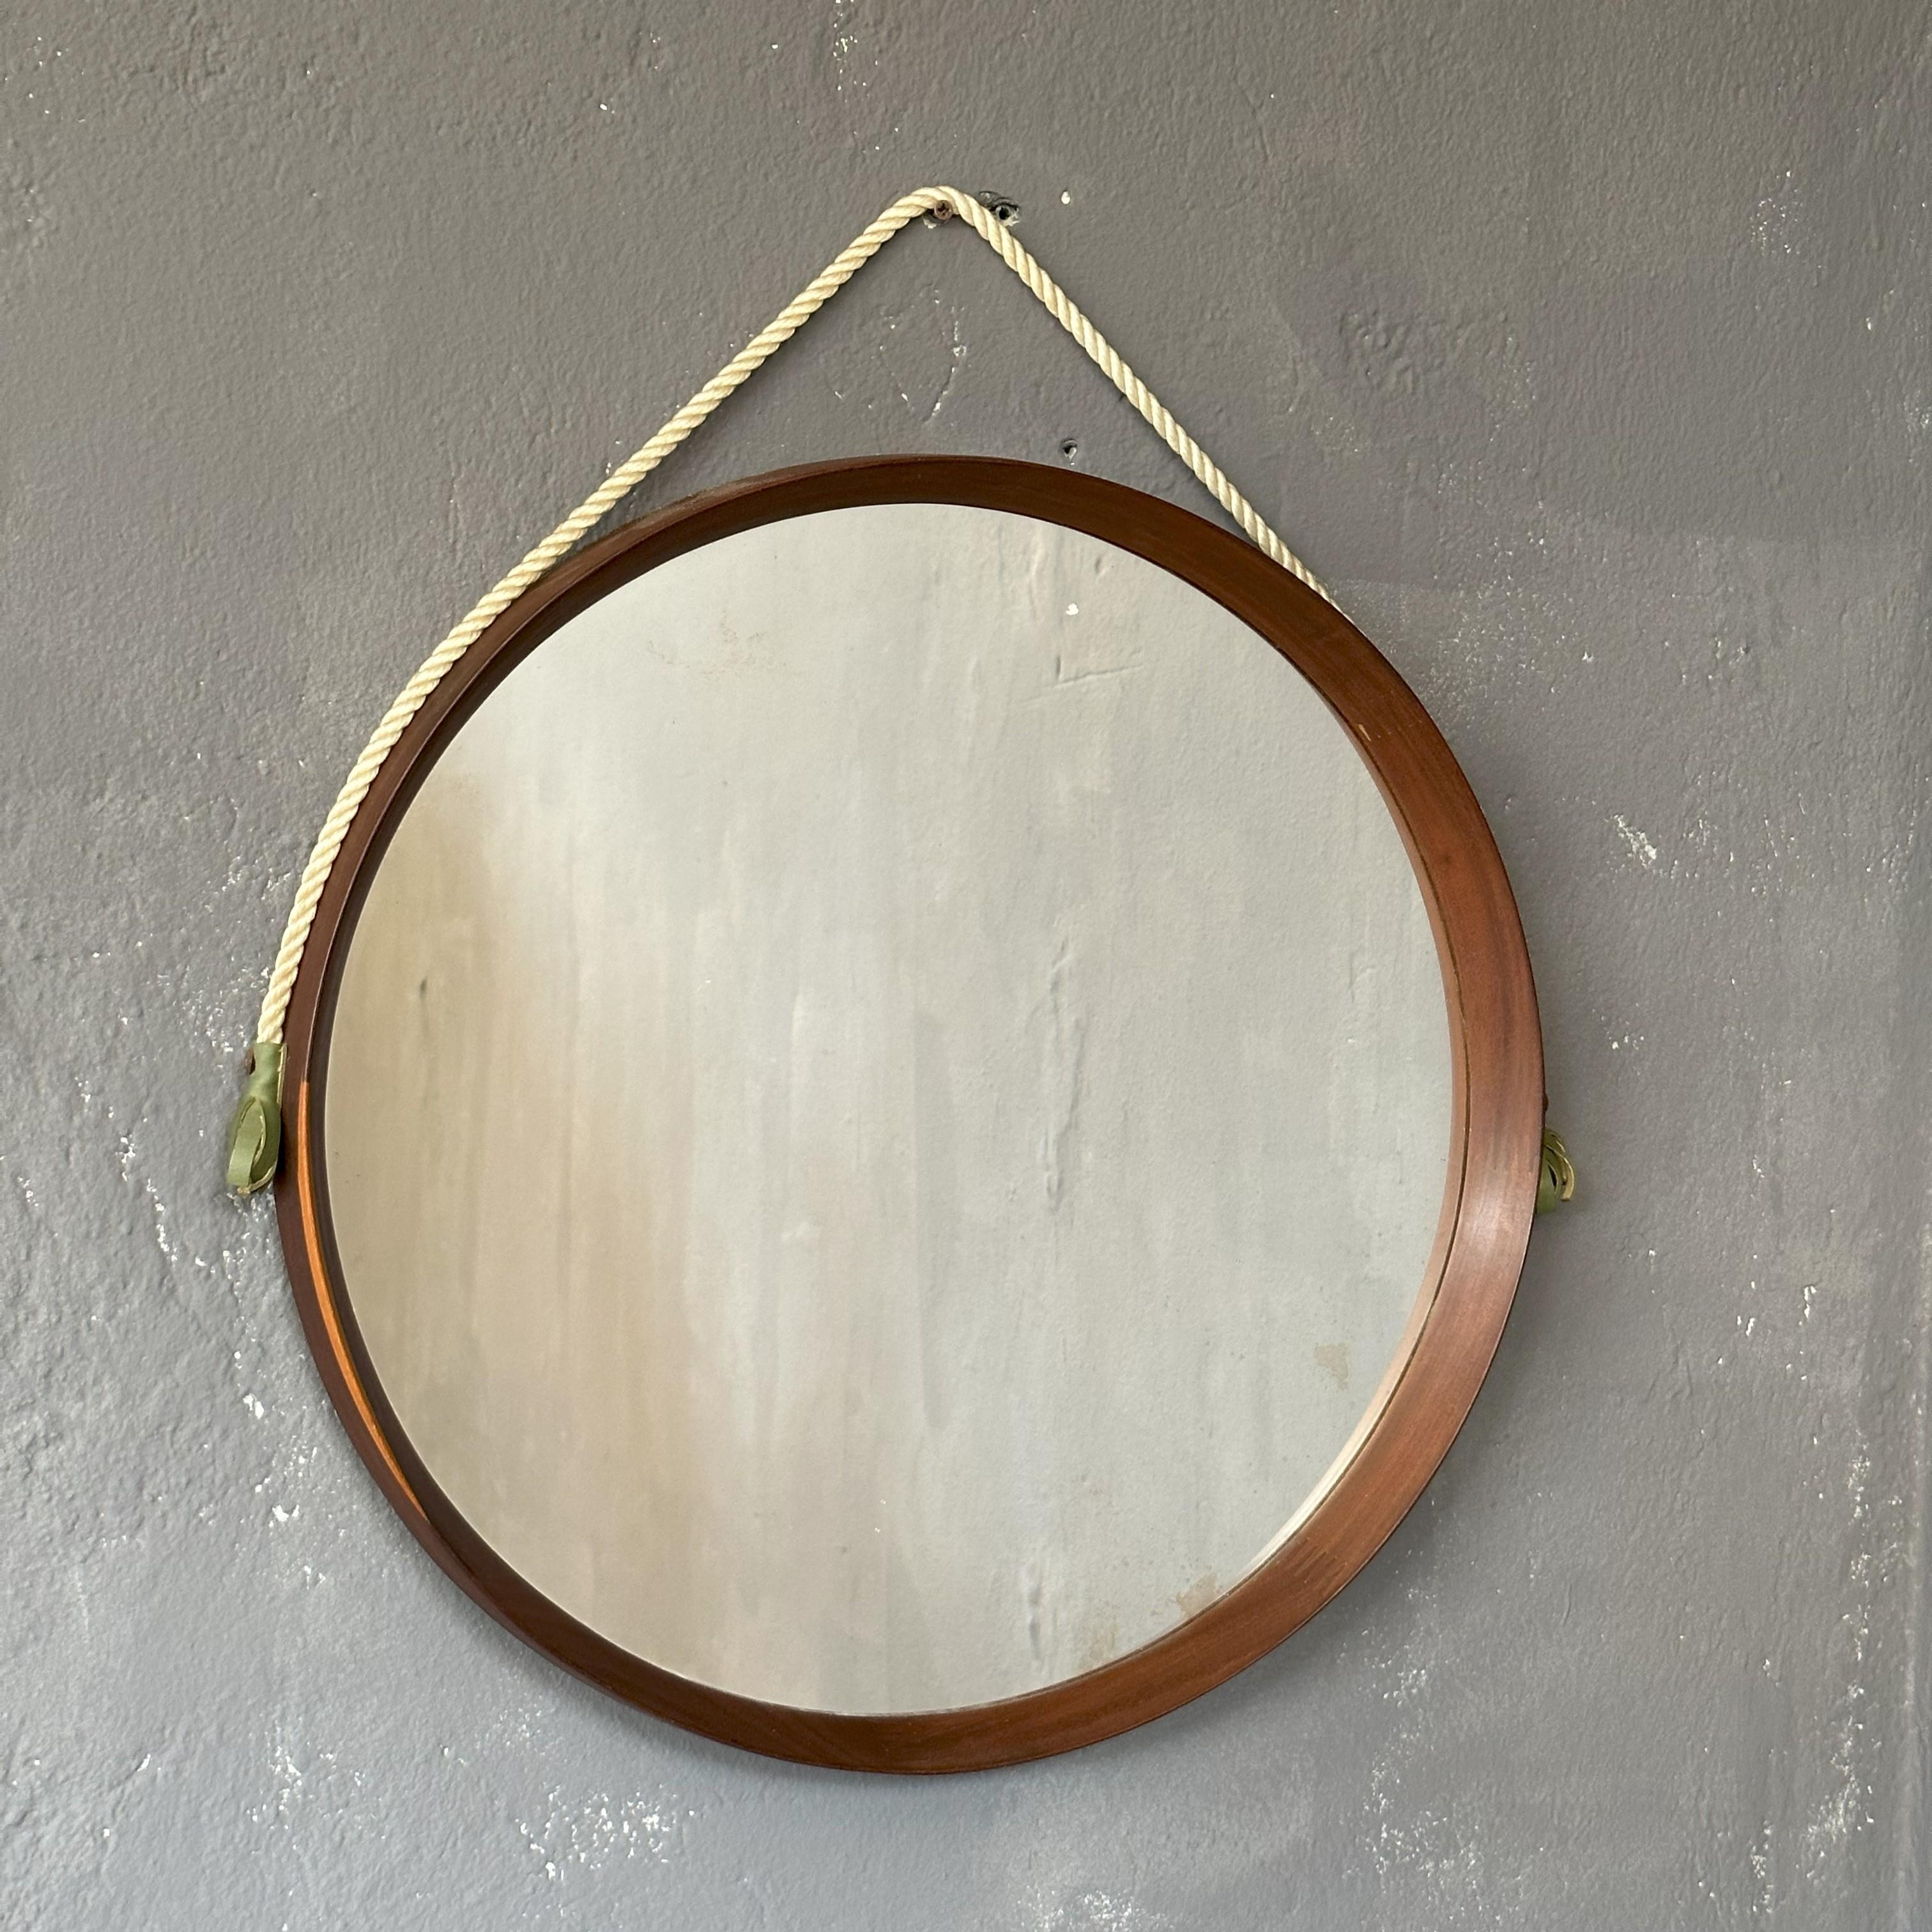 Runder Spiegel mit Teakholzrahmen, 1960er Jahre, italienische Herstellung, mit Aufhängeseil
Der Spiegel mit einem Durchmesser von 51cm, mit dem Seil hat eine Gesamthöhe von 60cm.
Entlang des gesamten Umfangs ein Teakholzrahmen mit schönen